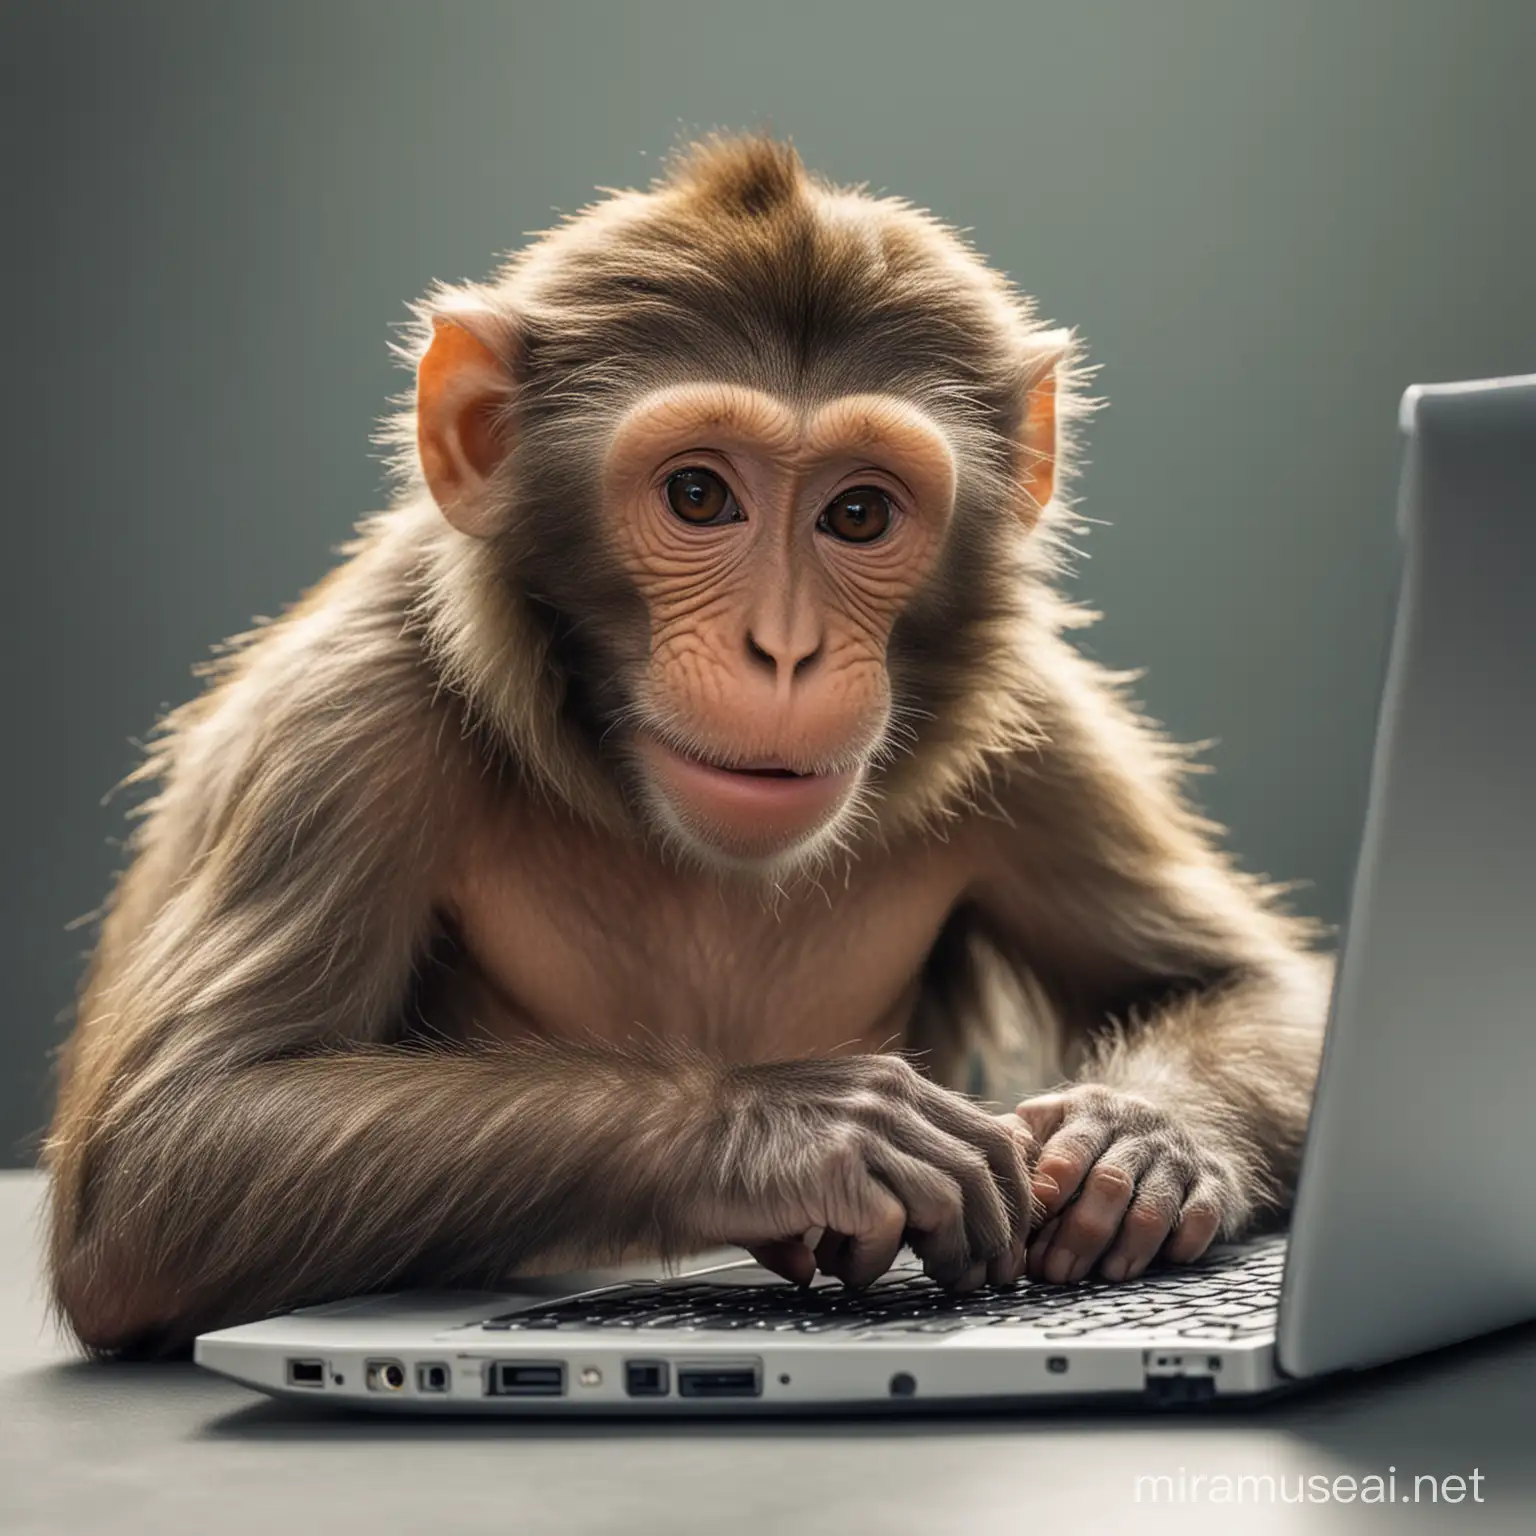 Monkey Using Laptop for Coding